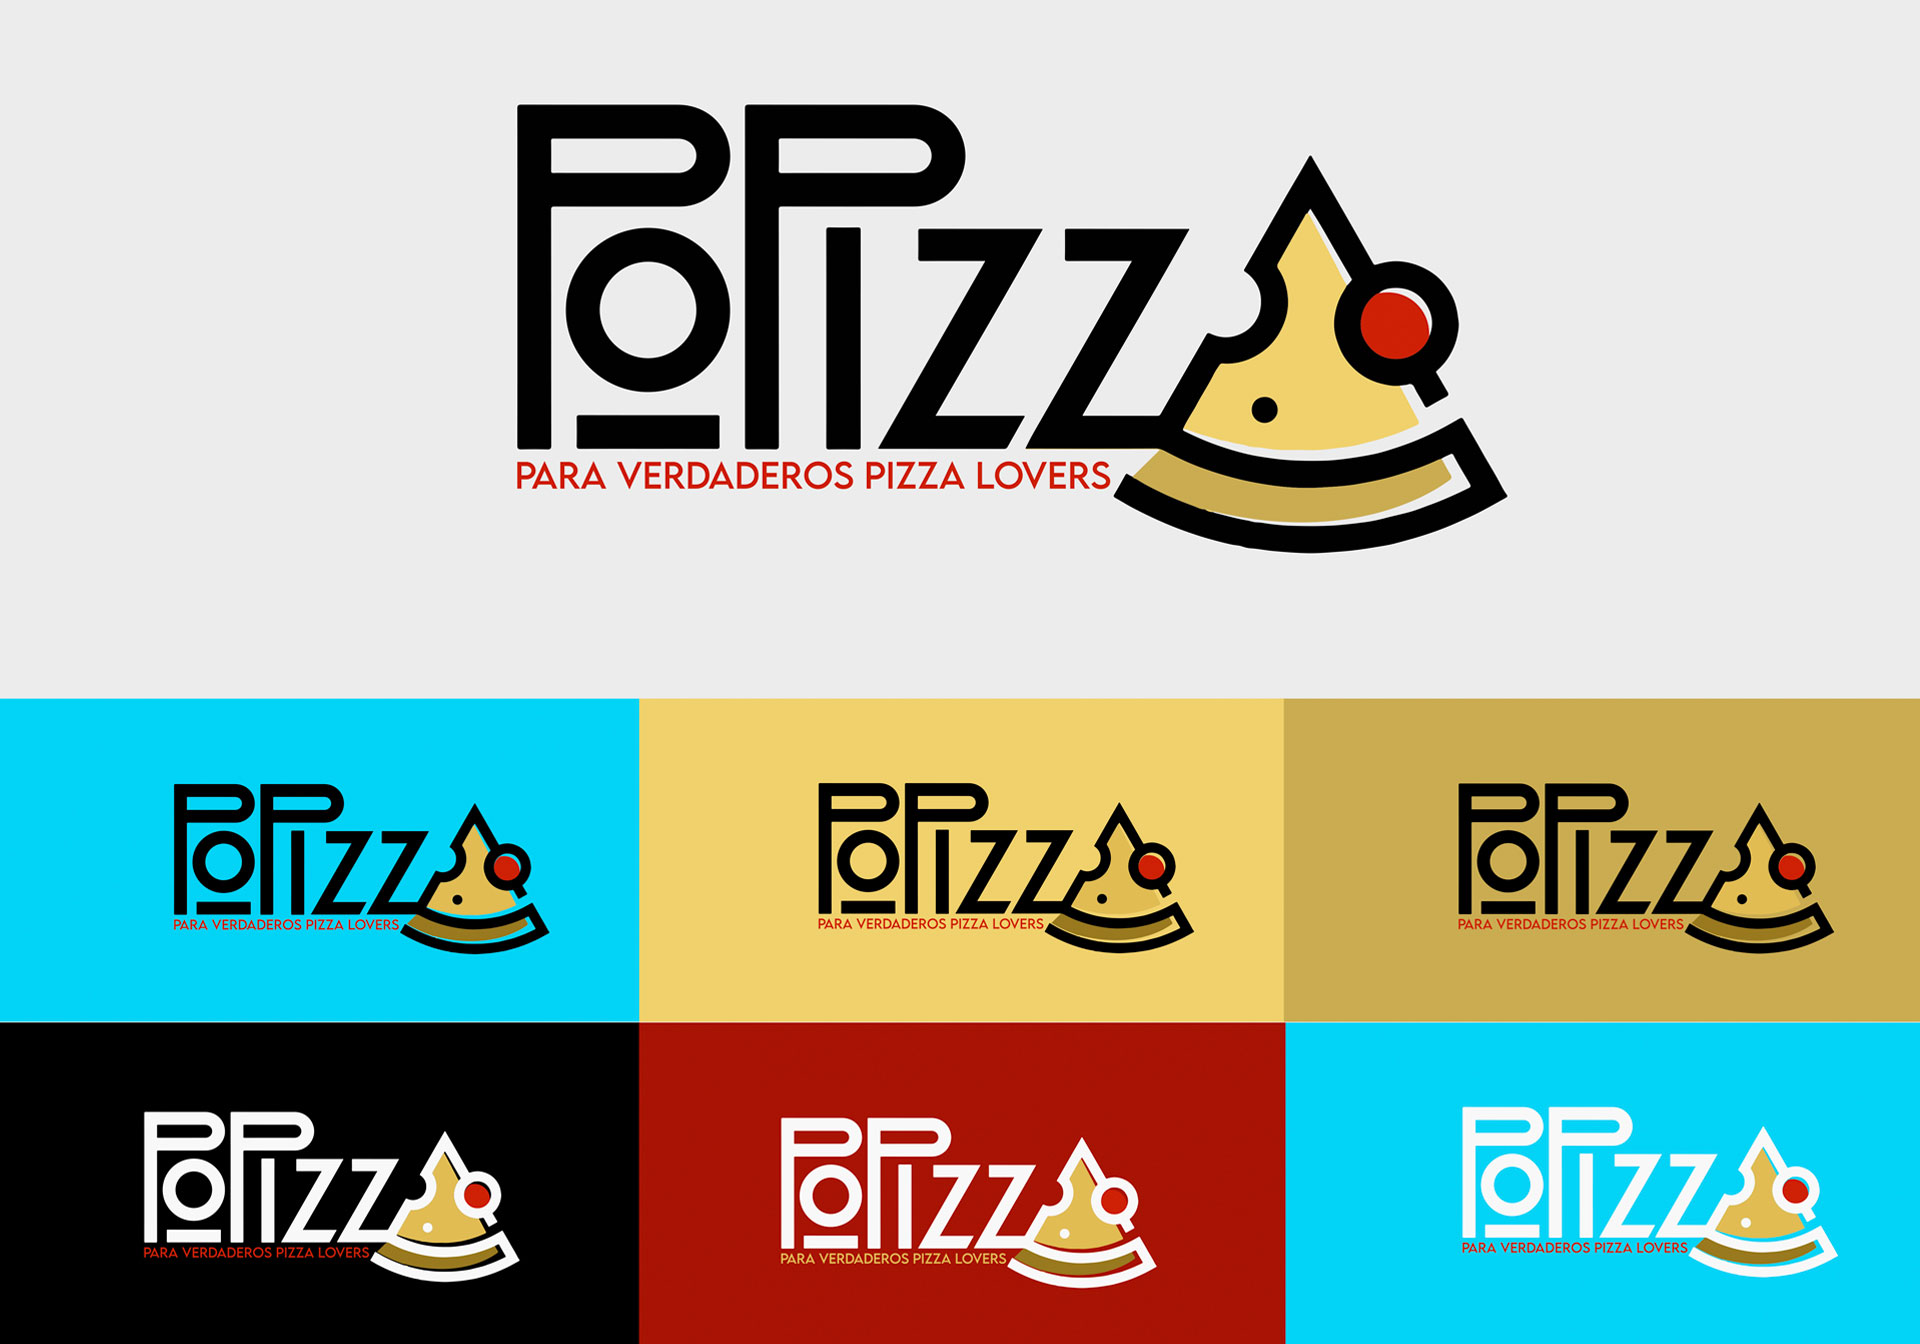 Logos Popizza